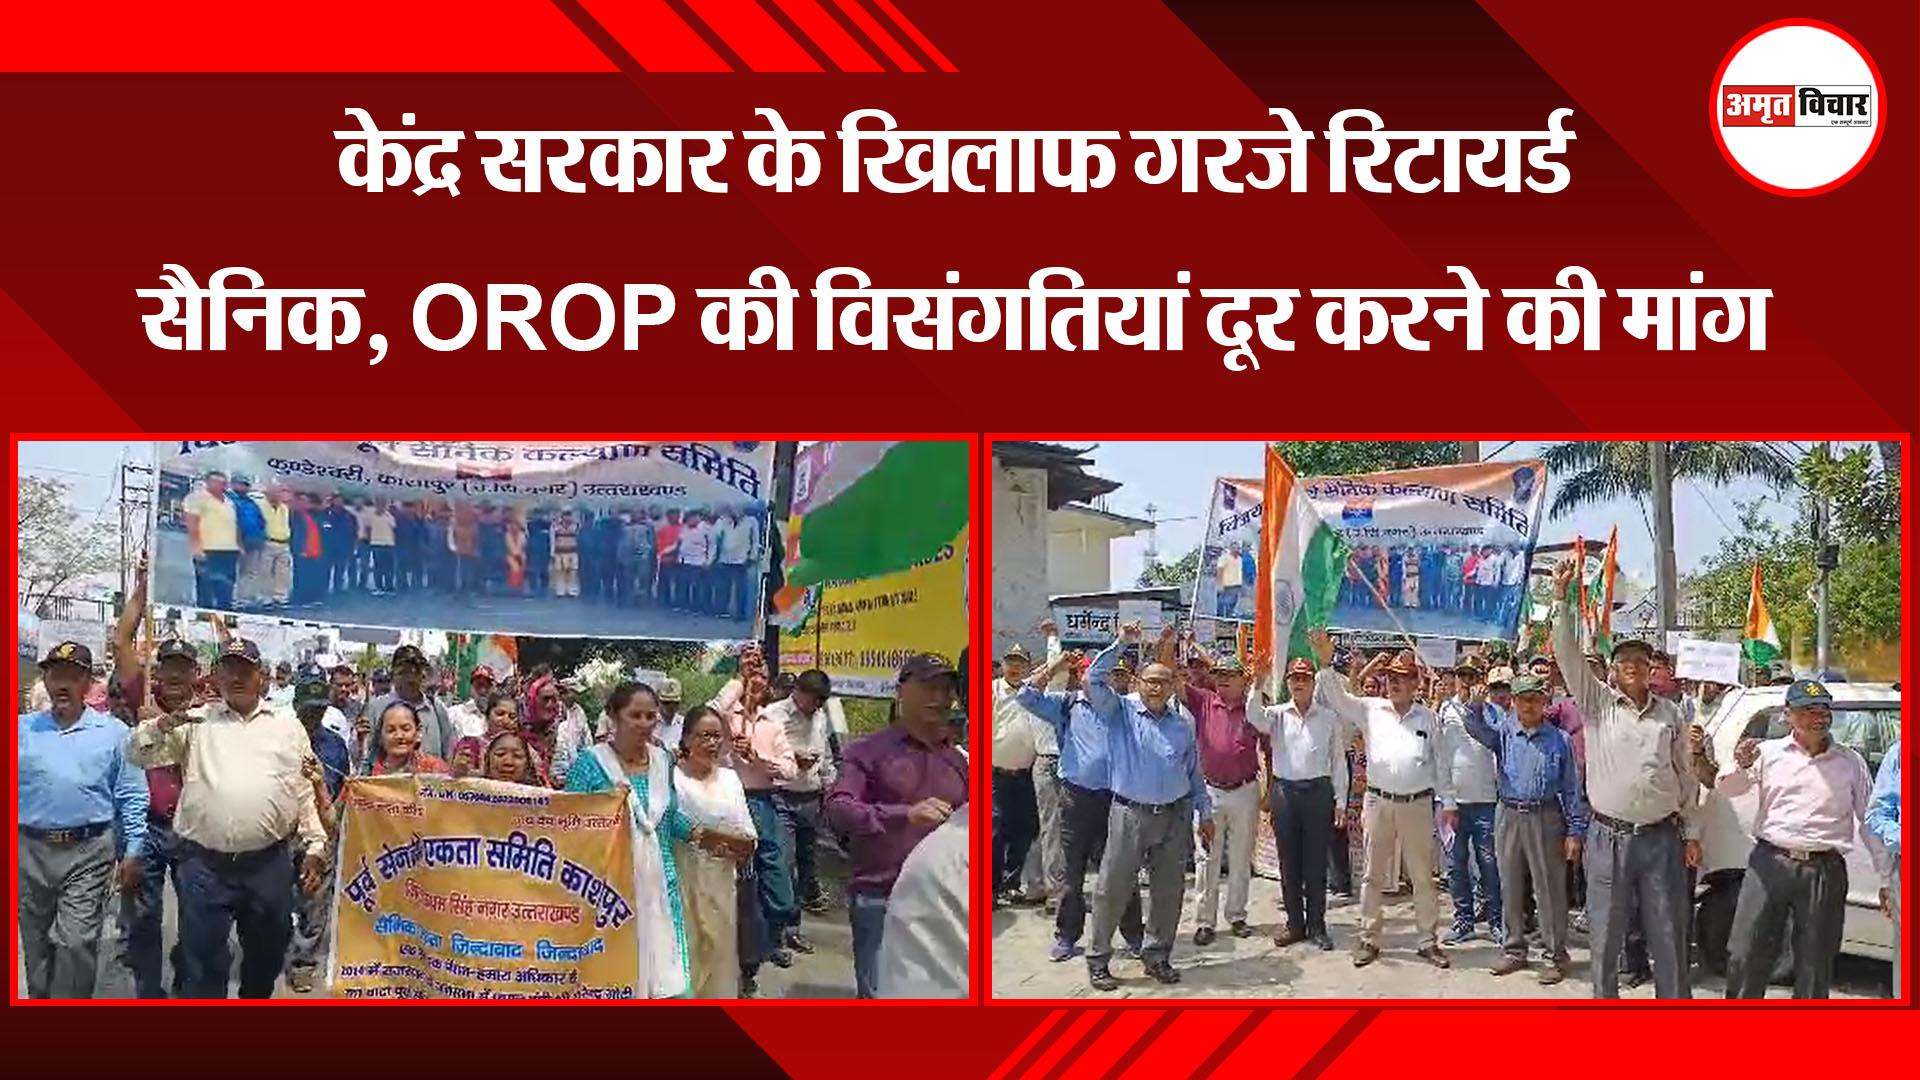 काशीपुर: केंद्र सरकार के खिलाफ गरजे रिटायर्ड सैनिक, OROP की विसंगतियां दूर करने की मांग